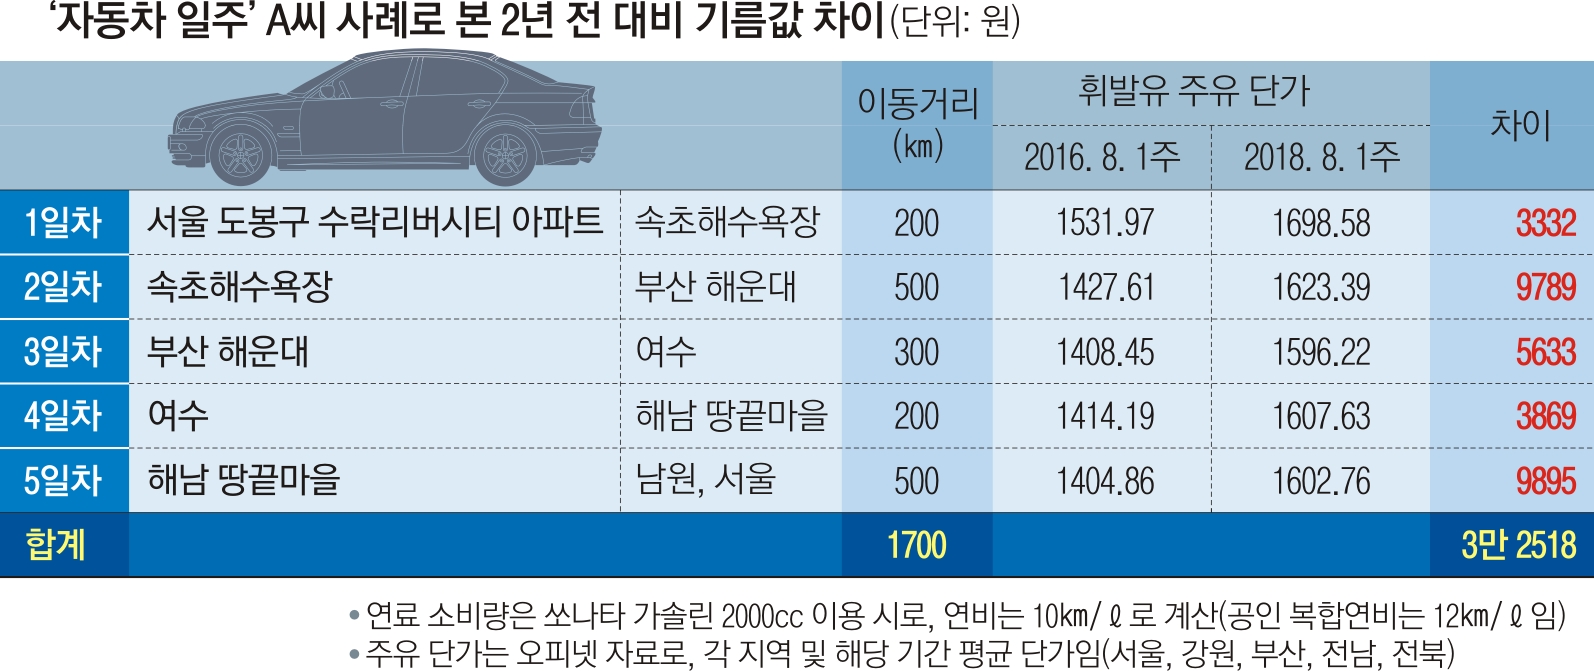 자동차 국내 일주 휘발유값 2년 전보다 3만원 더 들어 | 서울신문